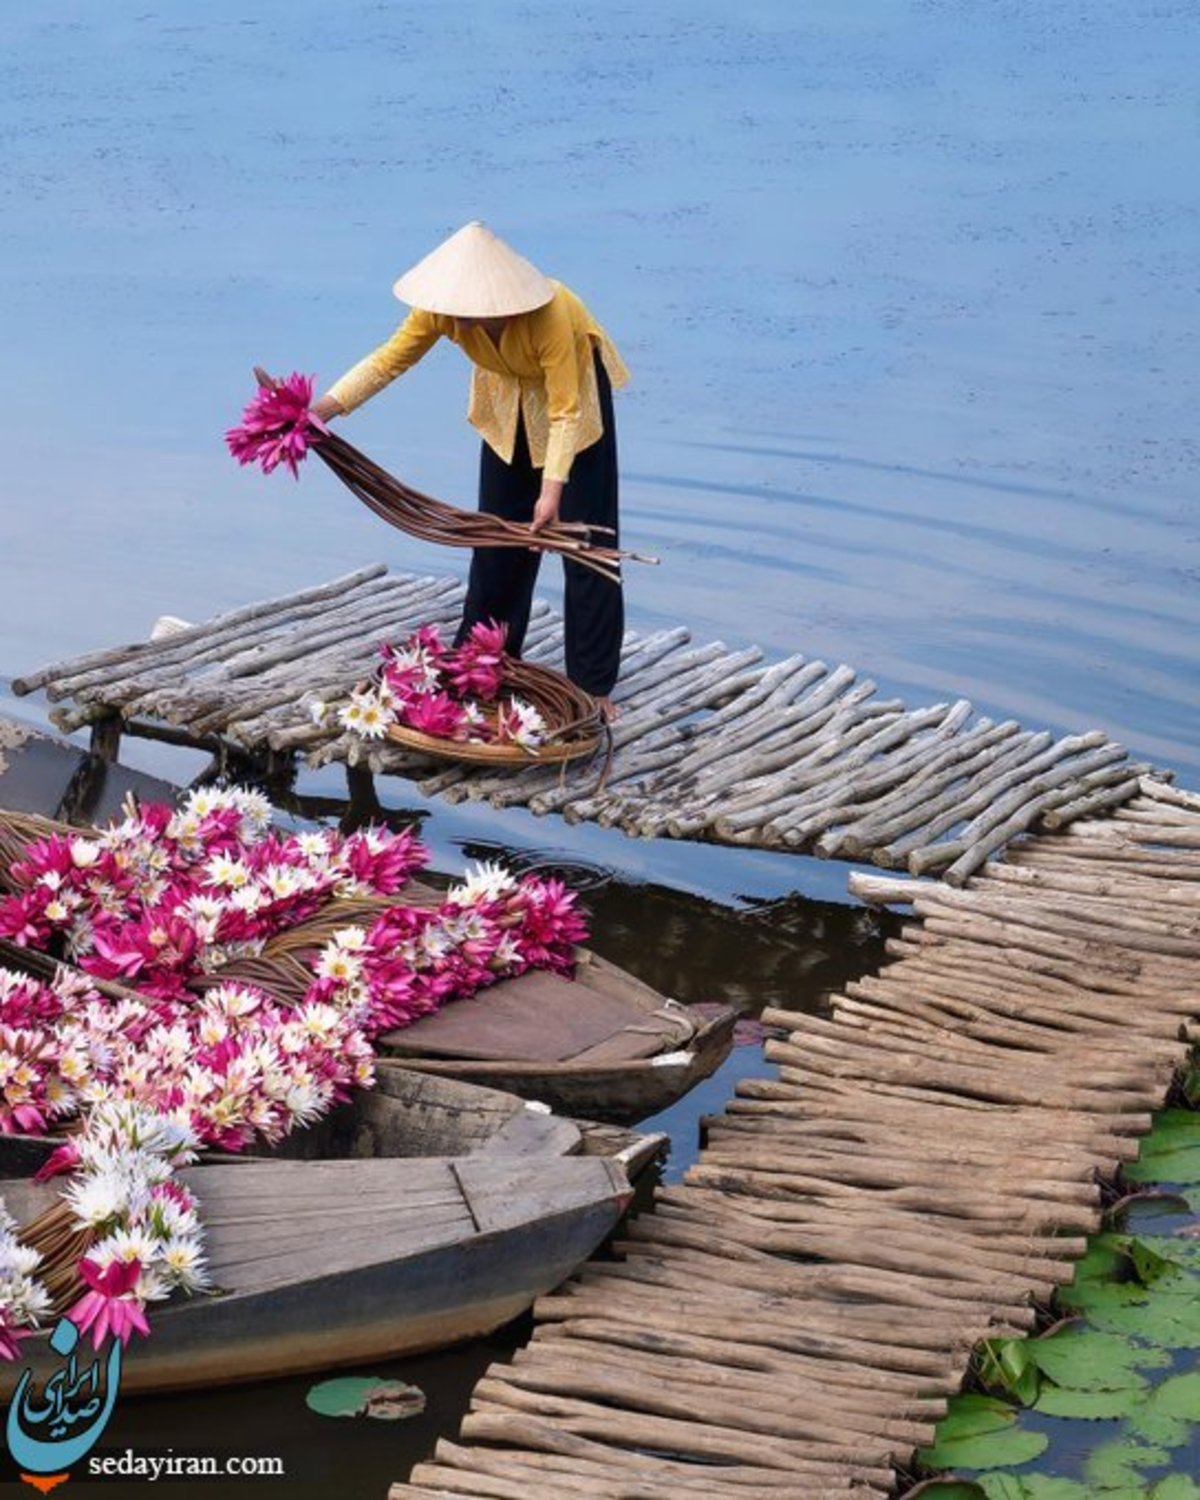 تصویری دل انگیز از برداشت نیلوفر آبی در ویتنام